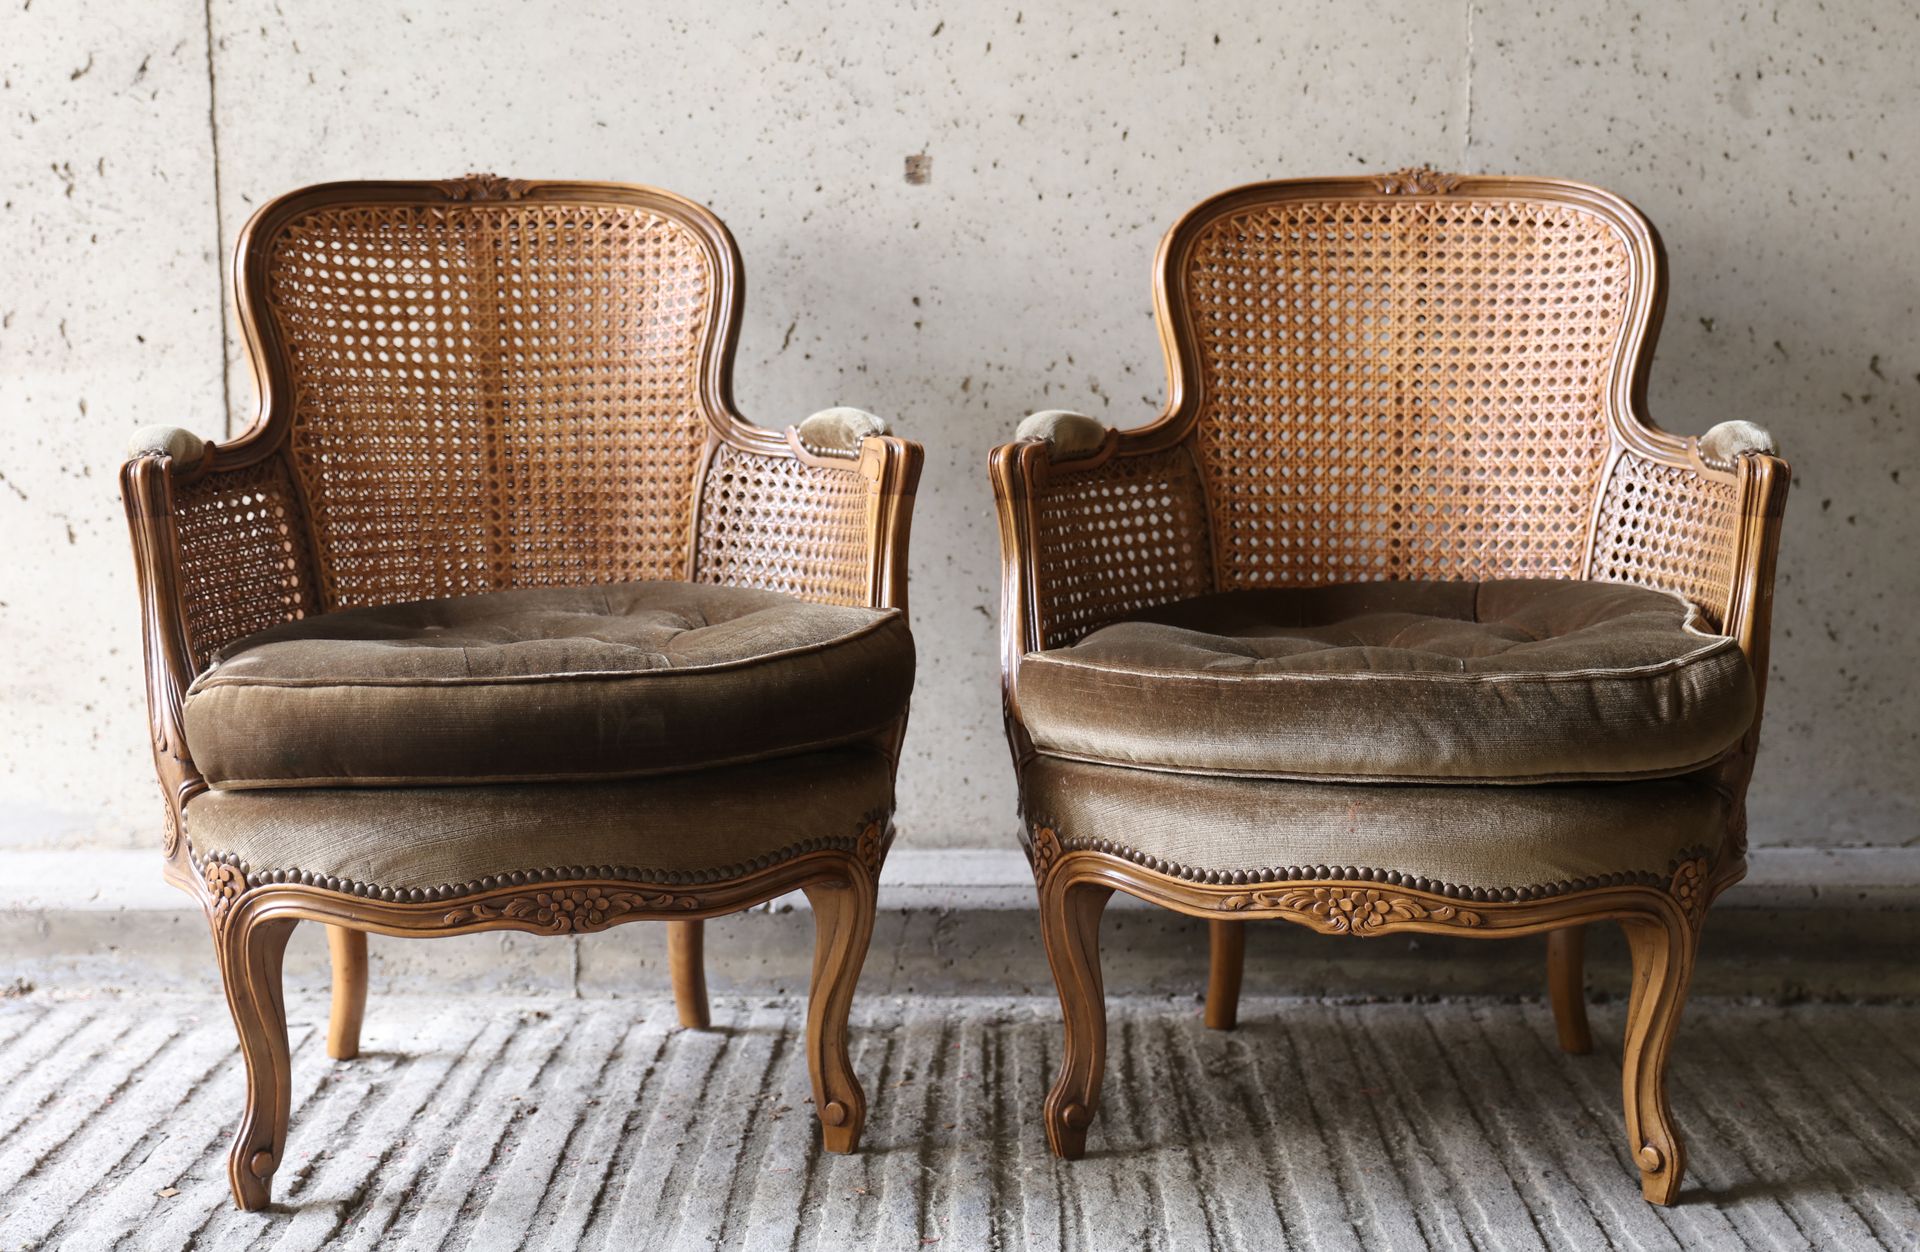 VARIA 1887-1972 一对路易十五风格的扶手椅，有编织的椅背和扶手
Paar fauteuils in Louis XV stijl met geca&hellip;